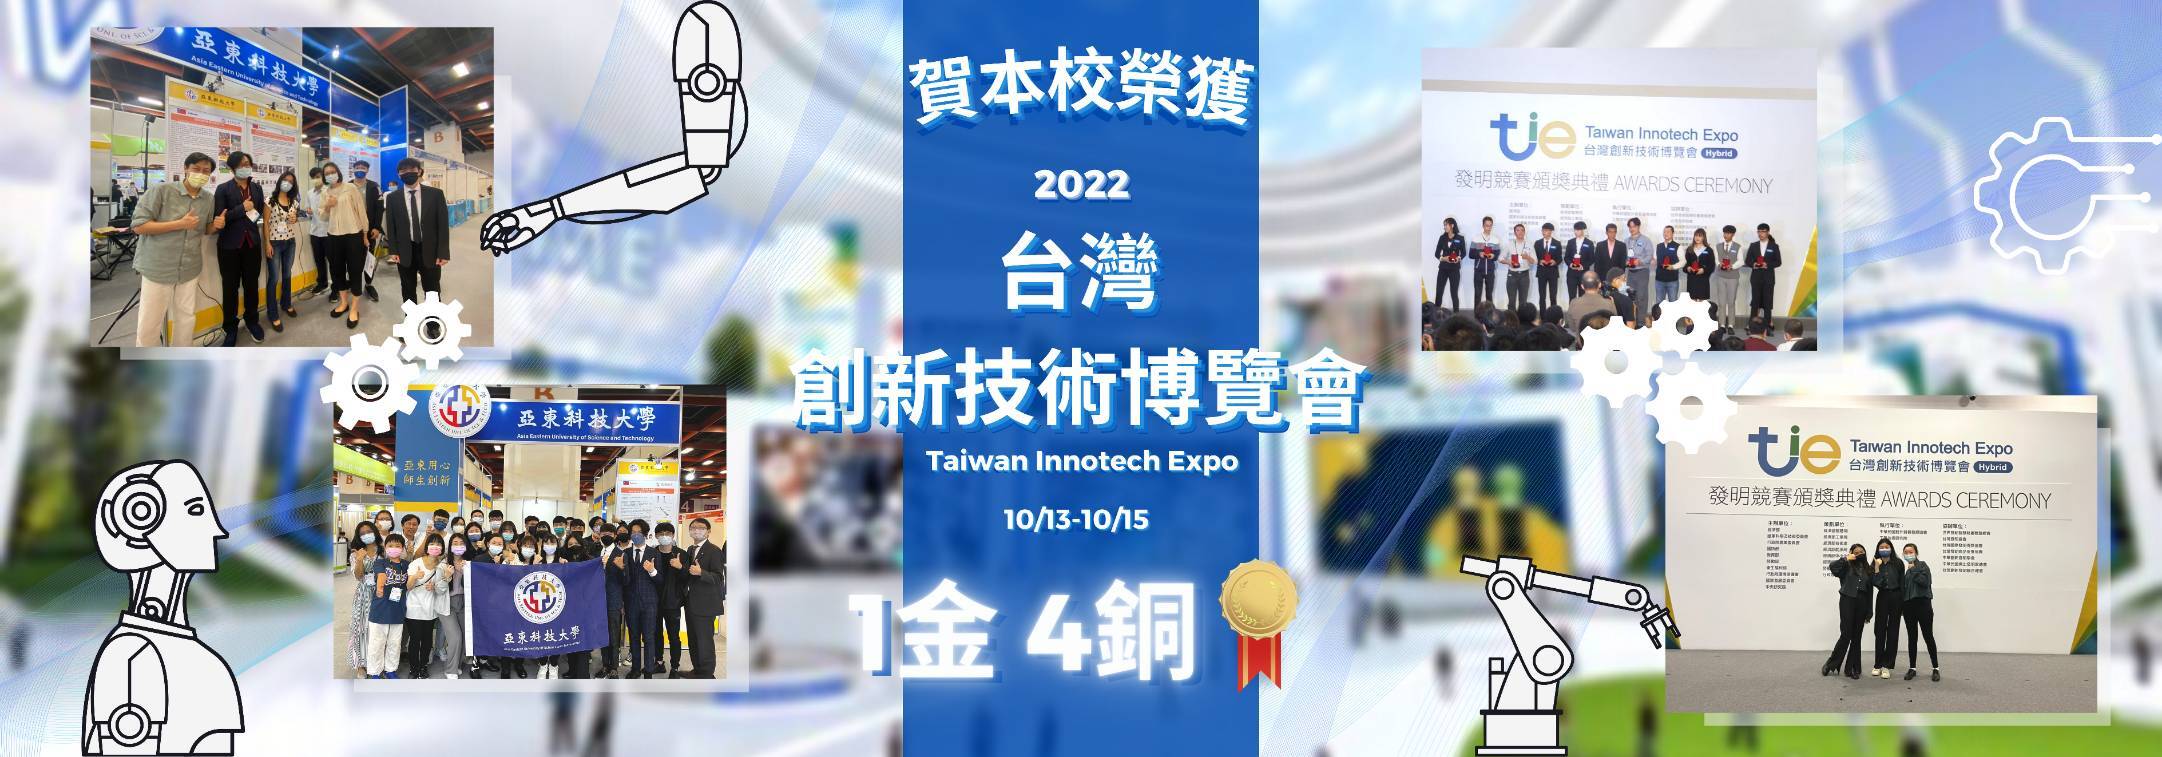 2022台灣創博會